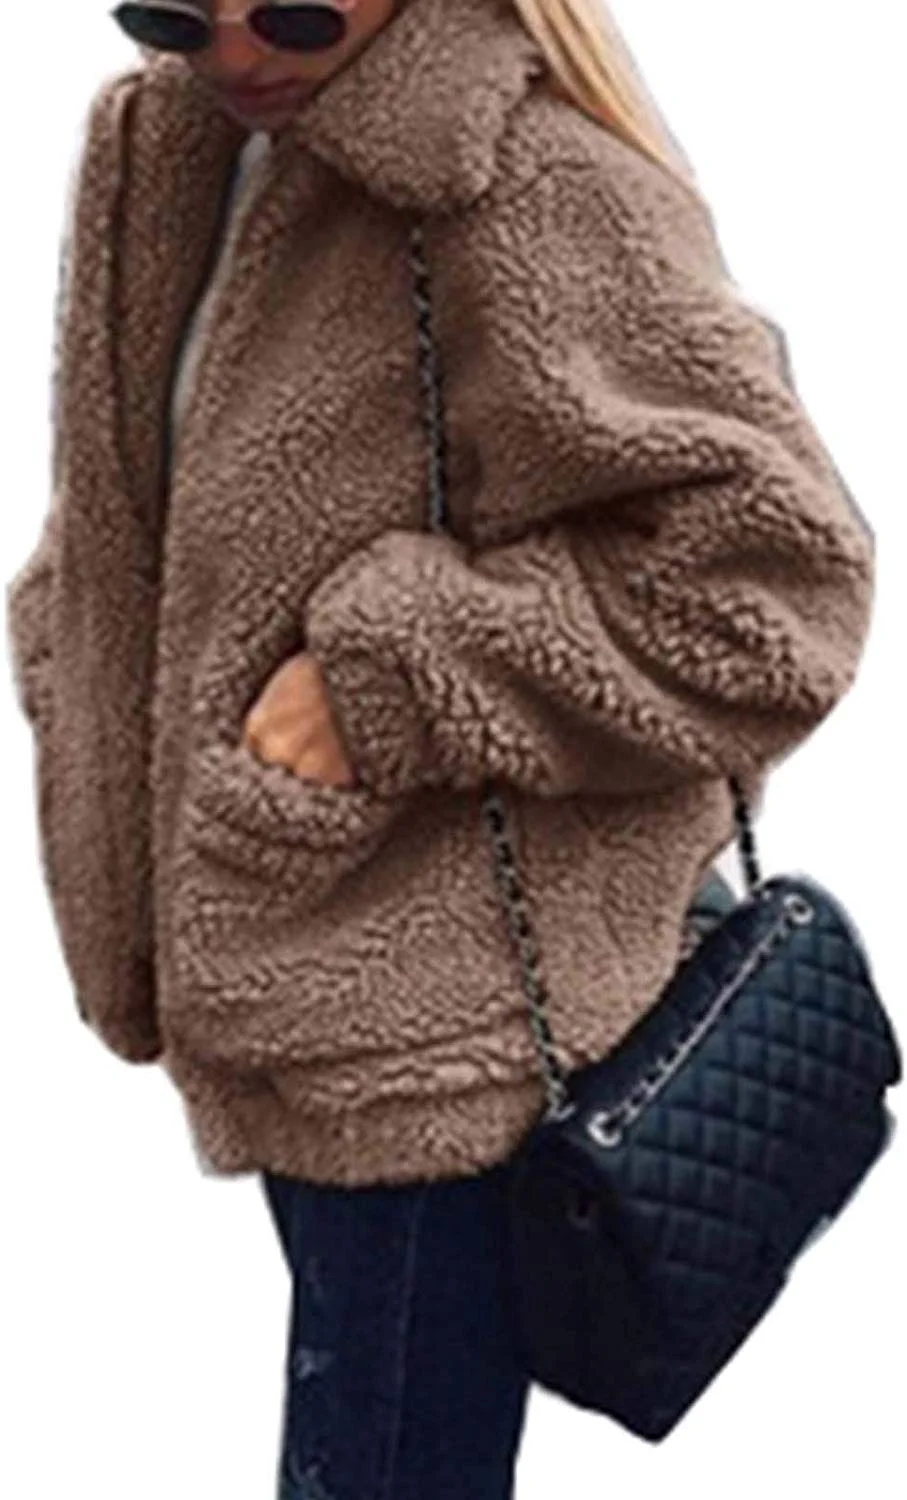 Women's Coat Casual Fleece Fuzzy Faux Shearling Fluffy Jackets Winter Long Sleeve Zip Up Outwear with Pockets S-3XL